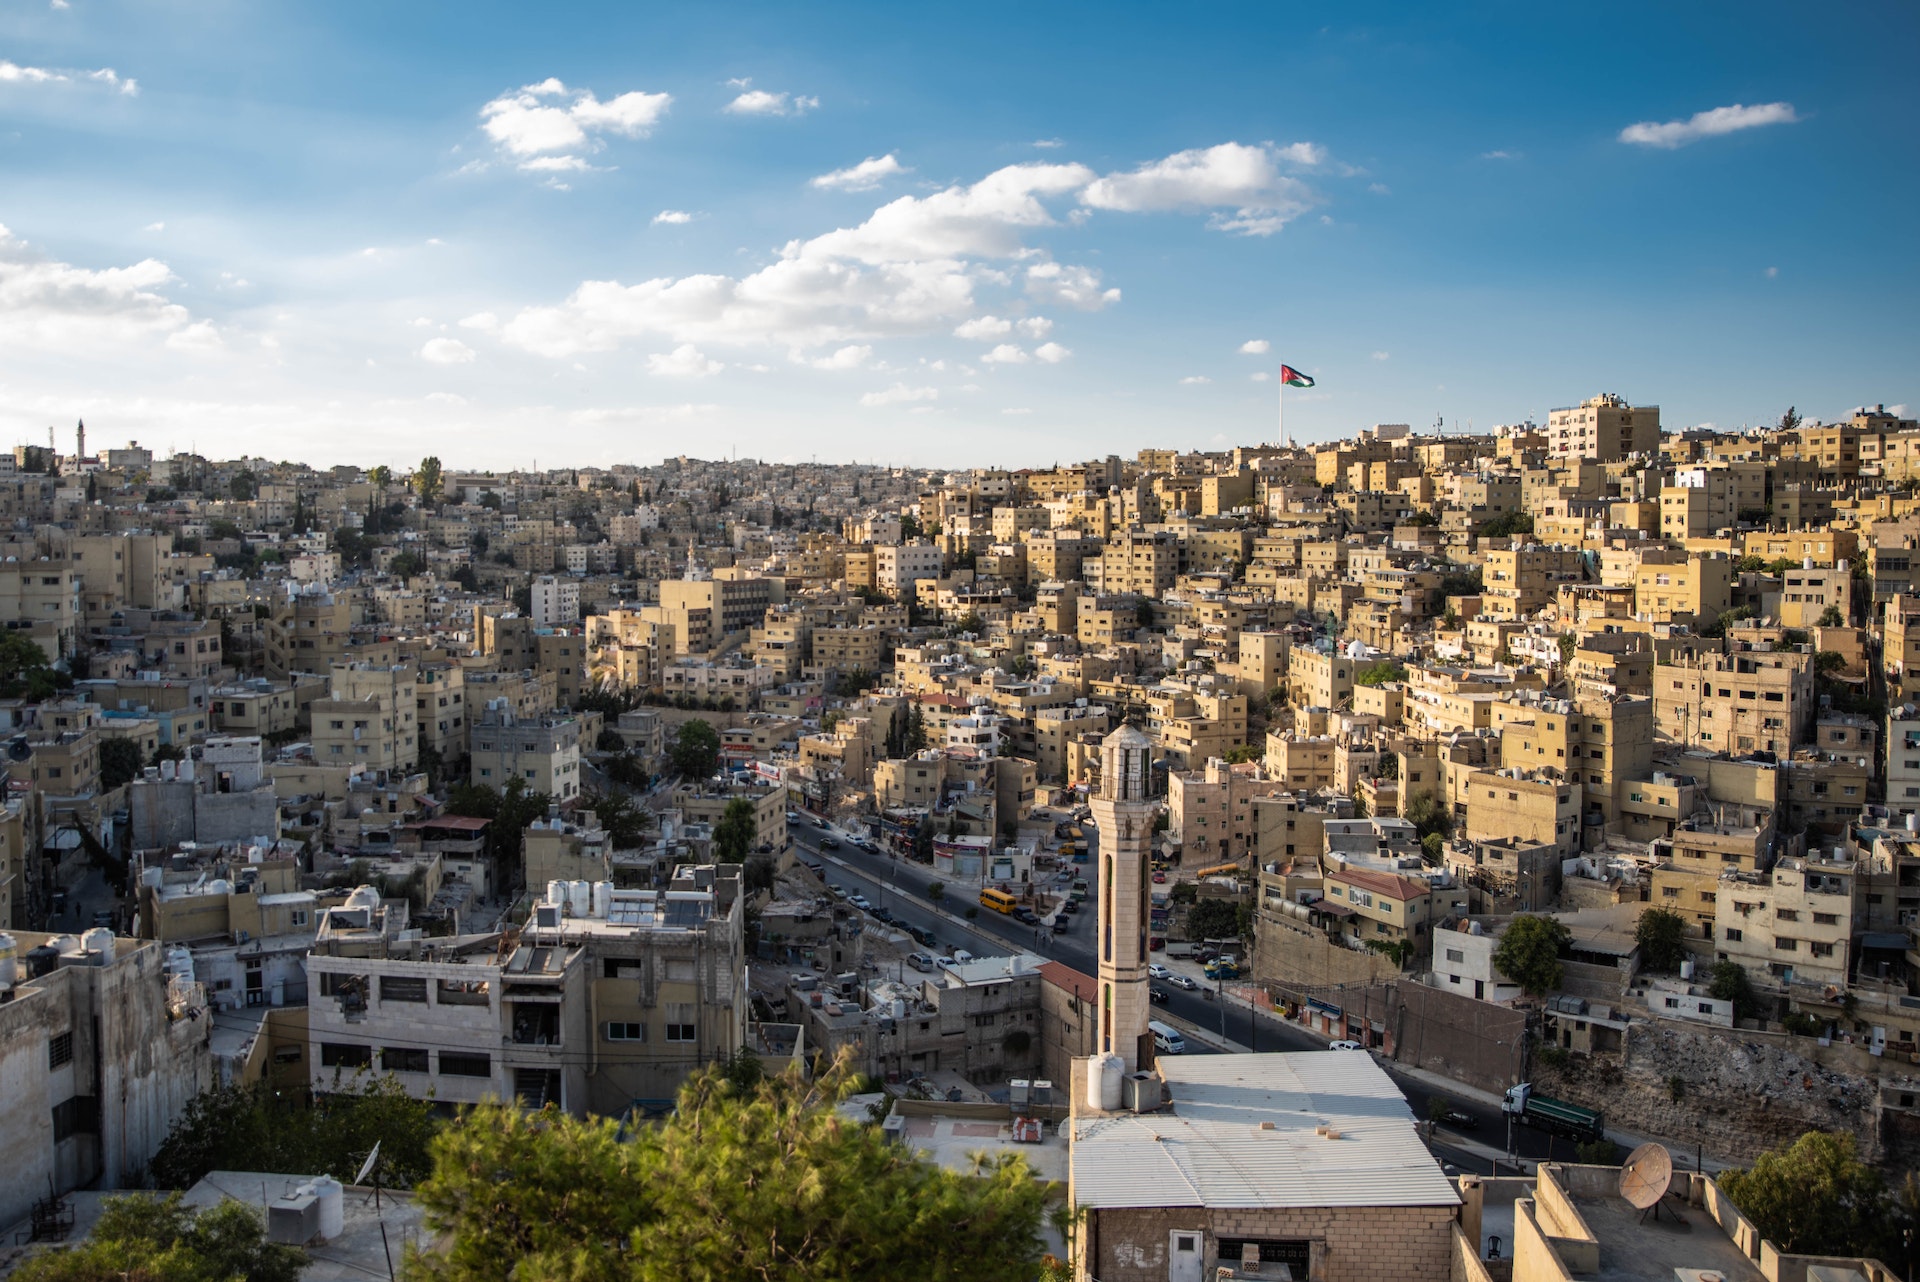 Amman pogoda w listopadzie, grudniu, styczniu i lutym – Kiedy warto wybrać się do Syrii?